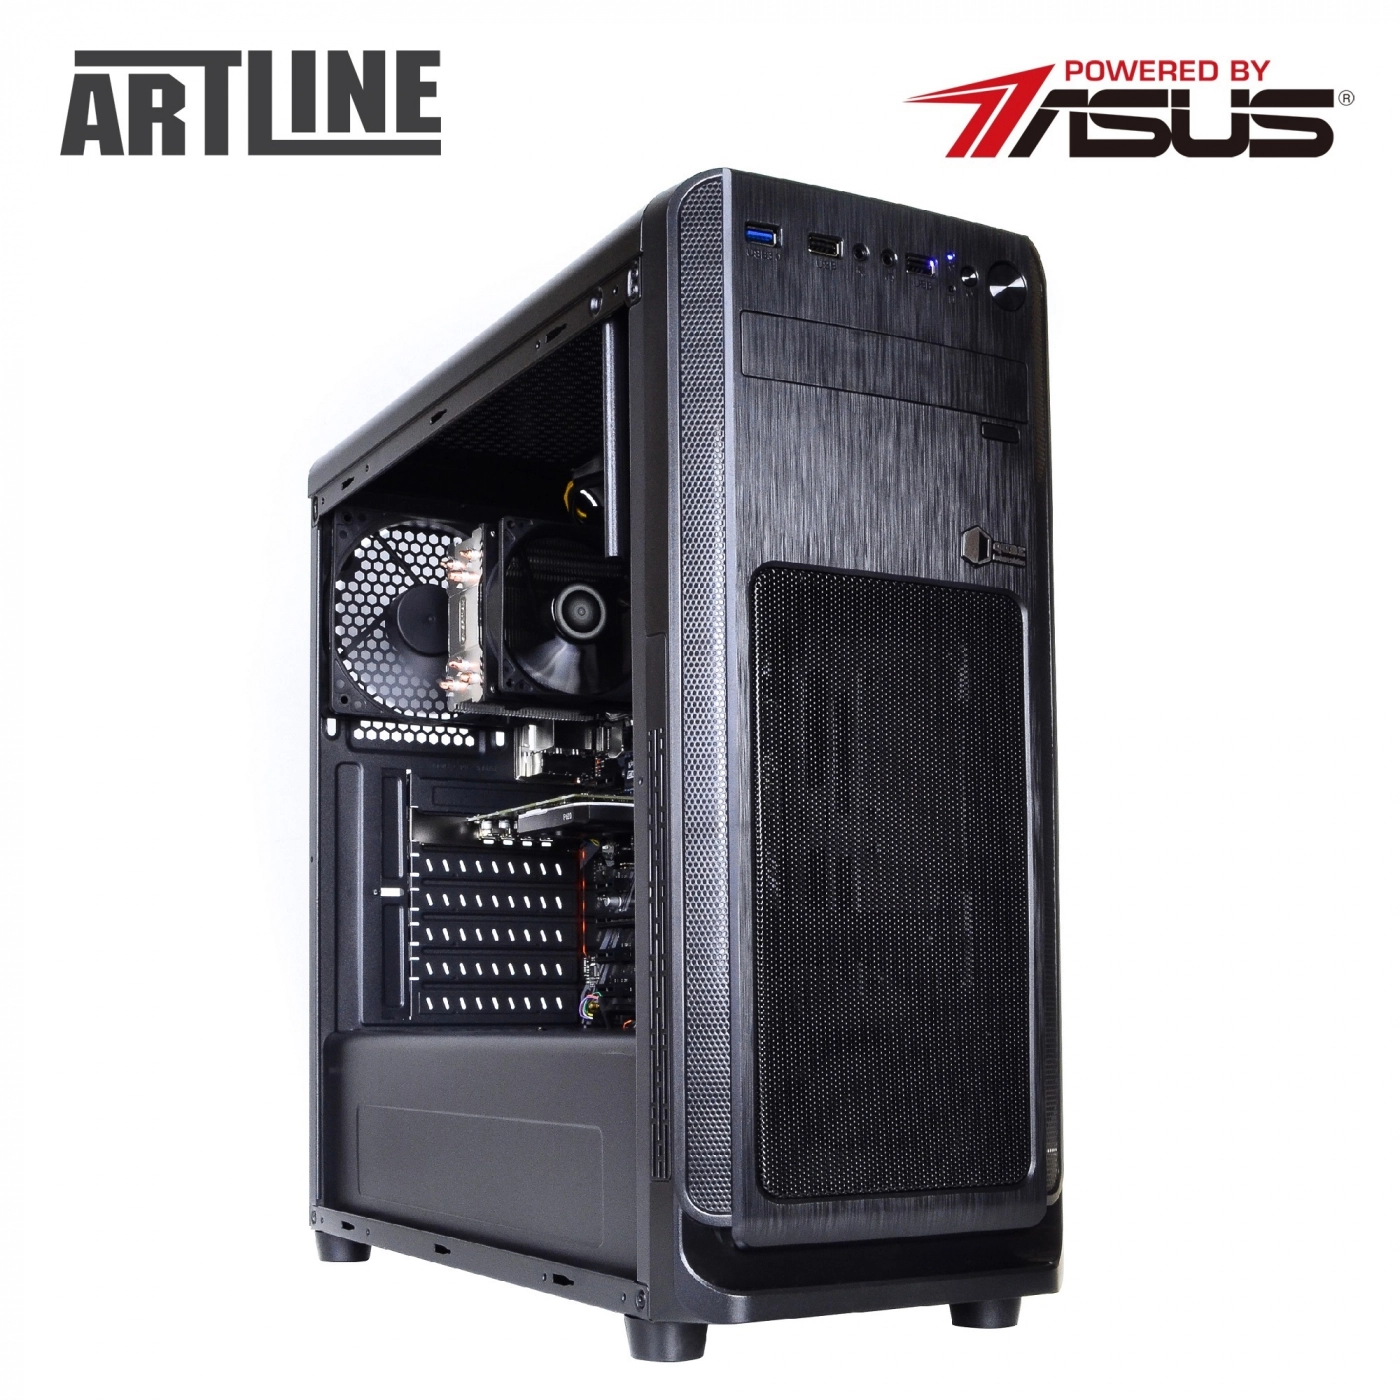 Купить Сервер ARTLINE Business T25v25 - фото 8